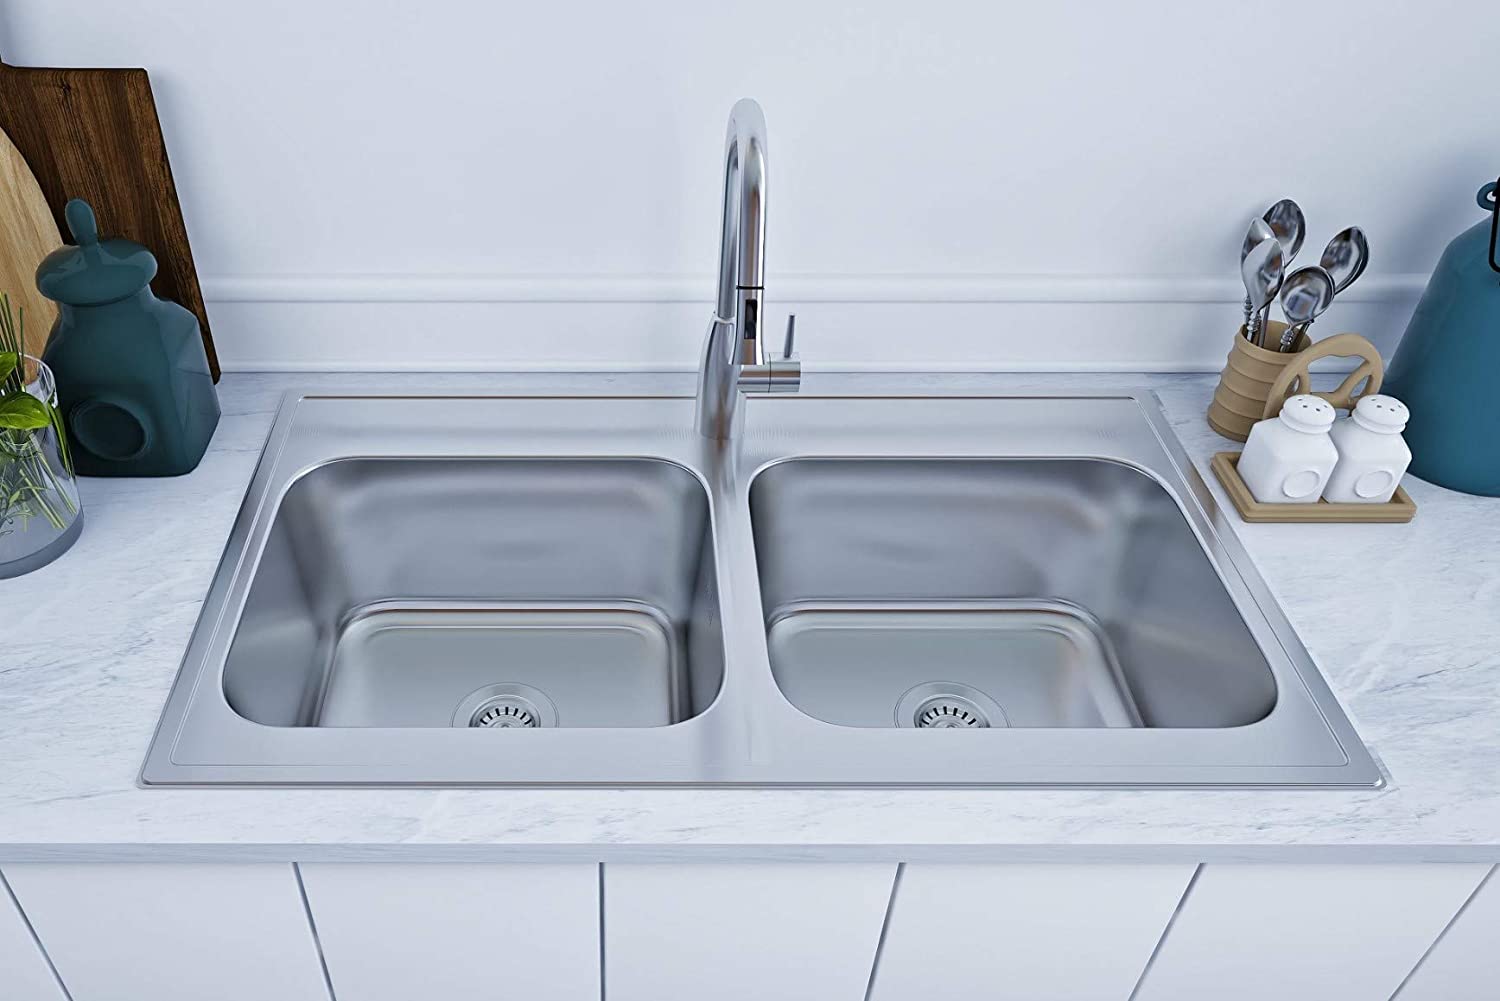 33x19 kitchen sink drop-in